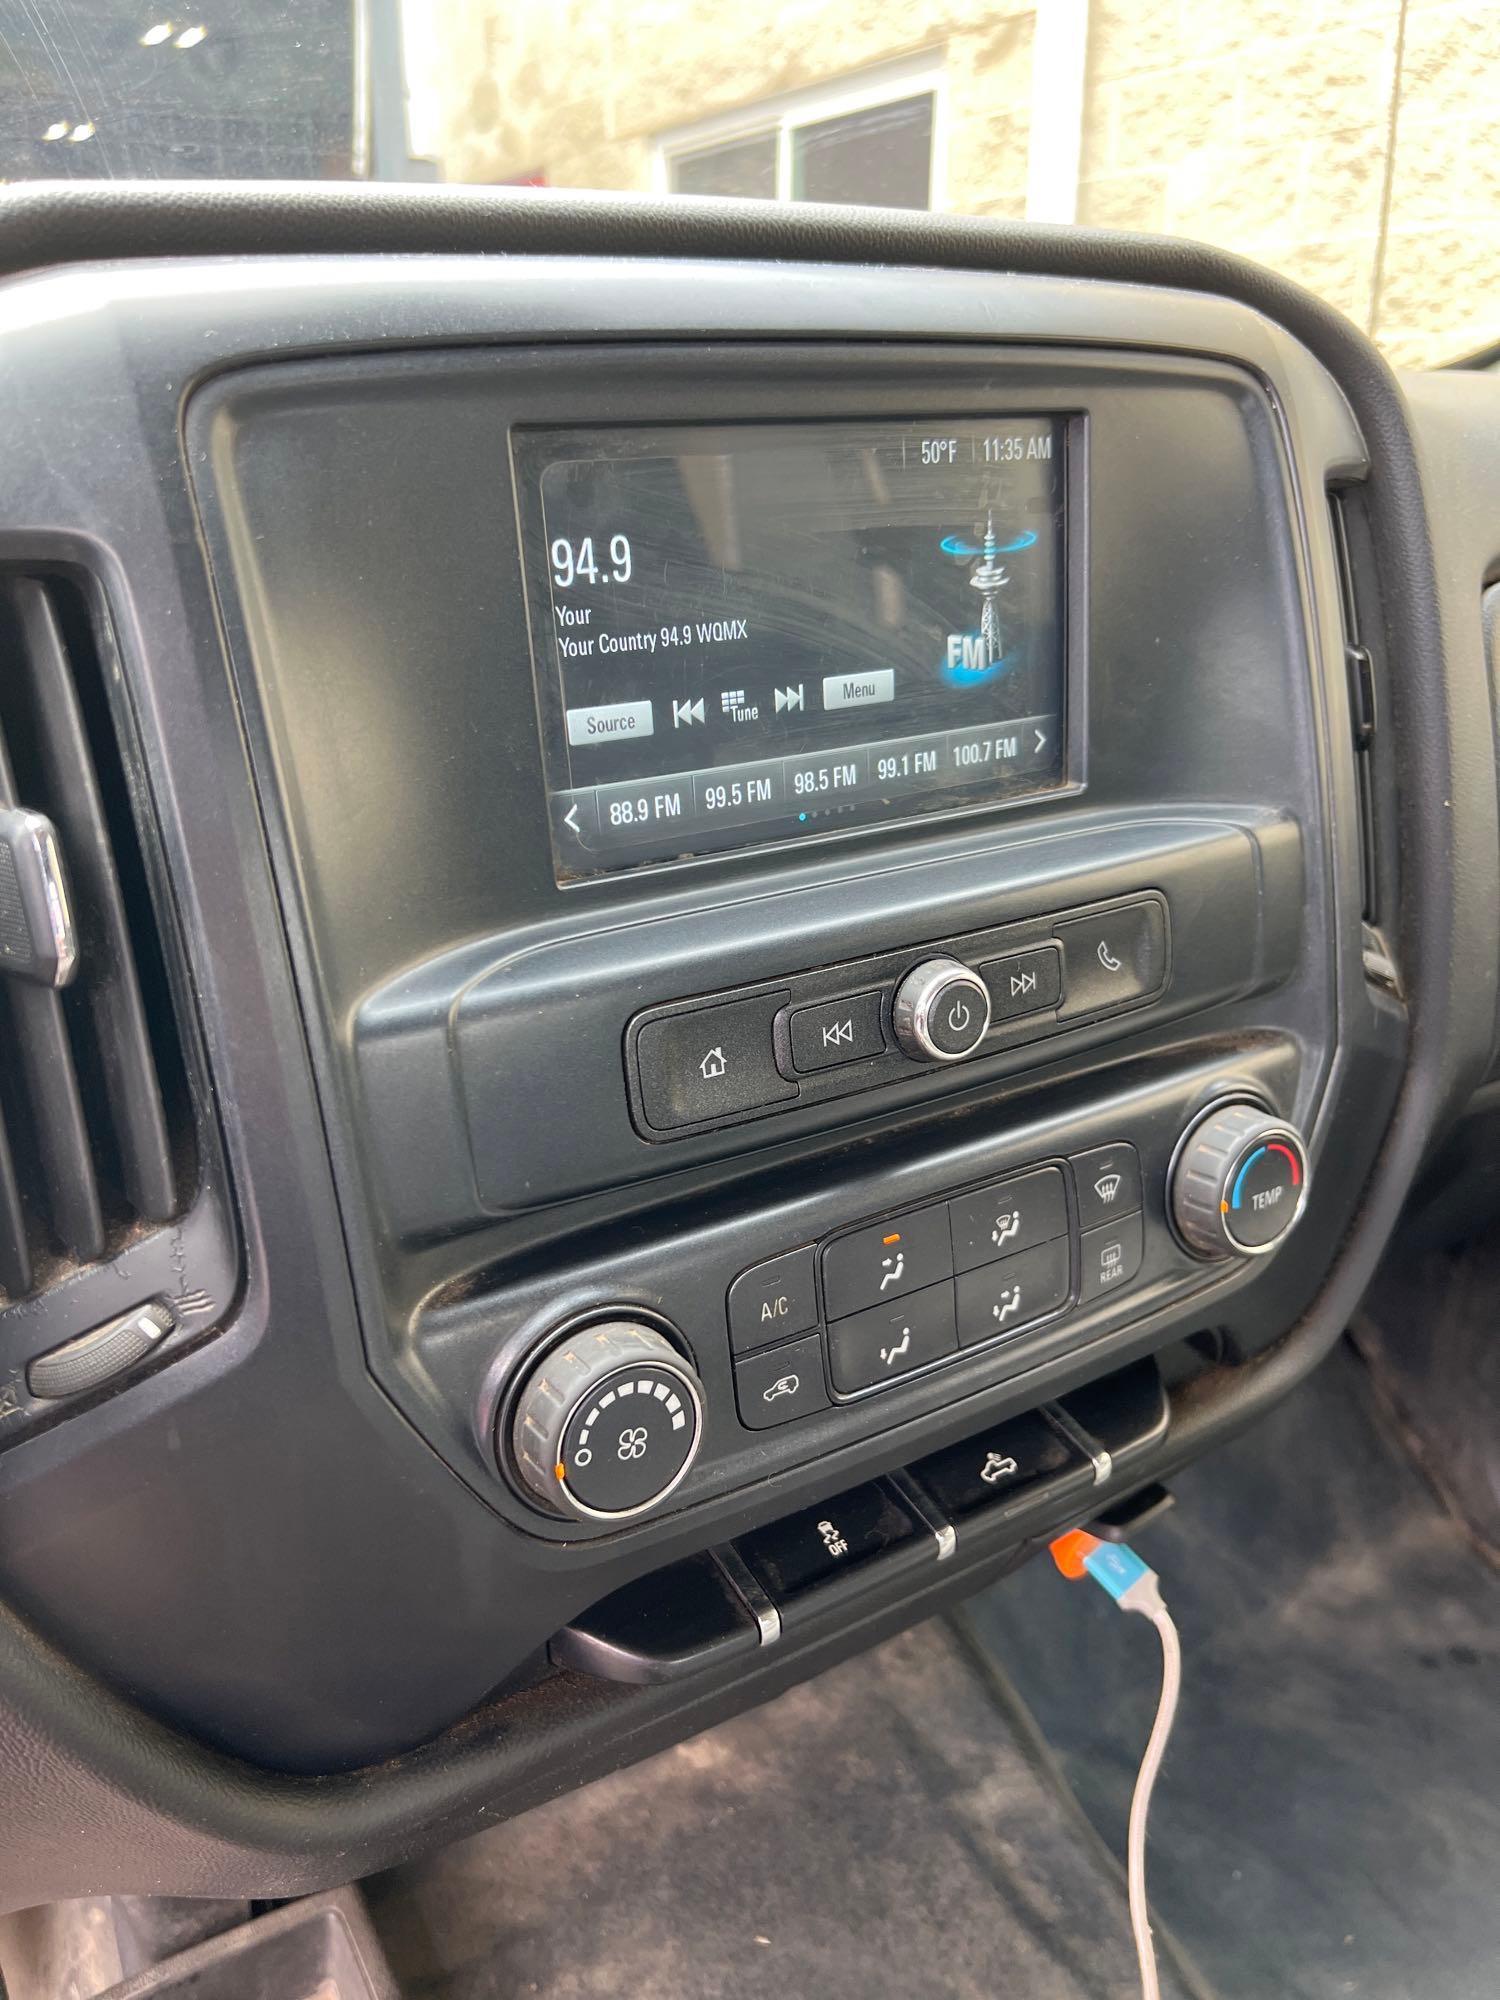 2019 Chevy Silverado 2500 HD Truck